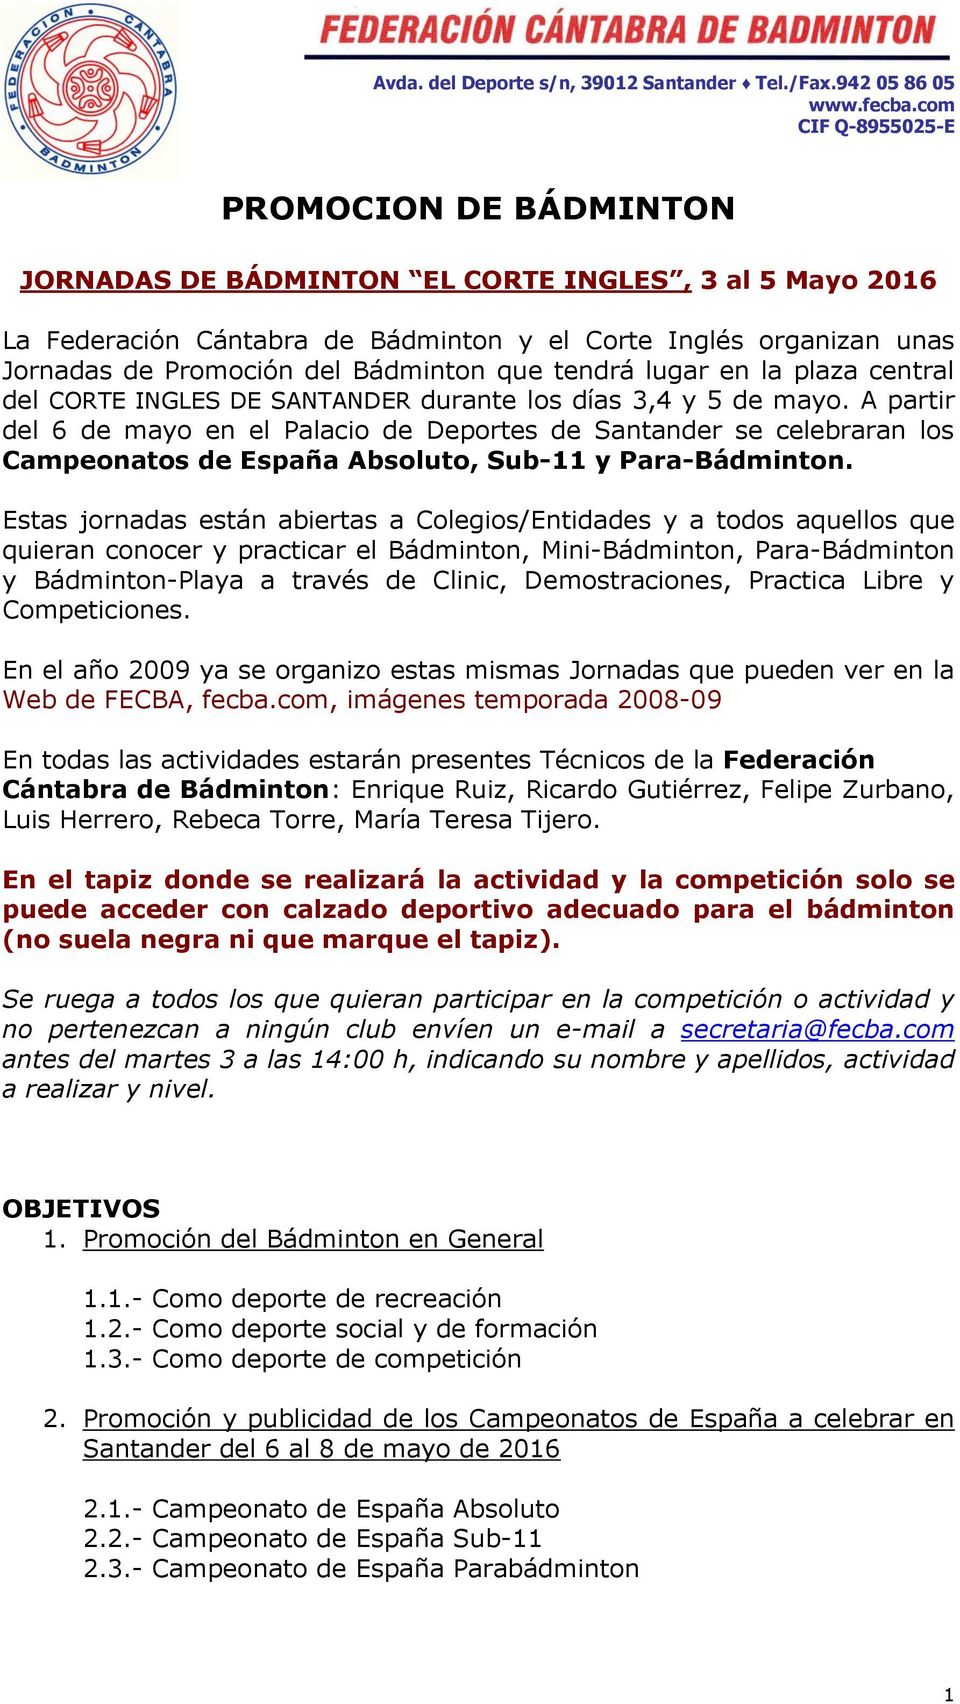 A partir del 6 de mayo en el Palacio de Deportes de Santander se celebraran los Campeonatos de España Absoluto, Sub-11 y Para-Bádminton.